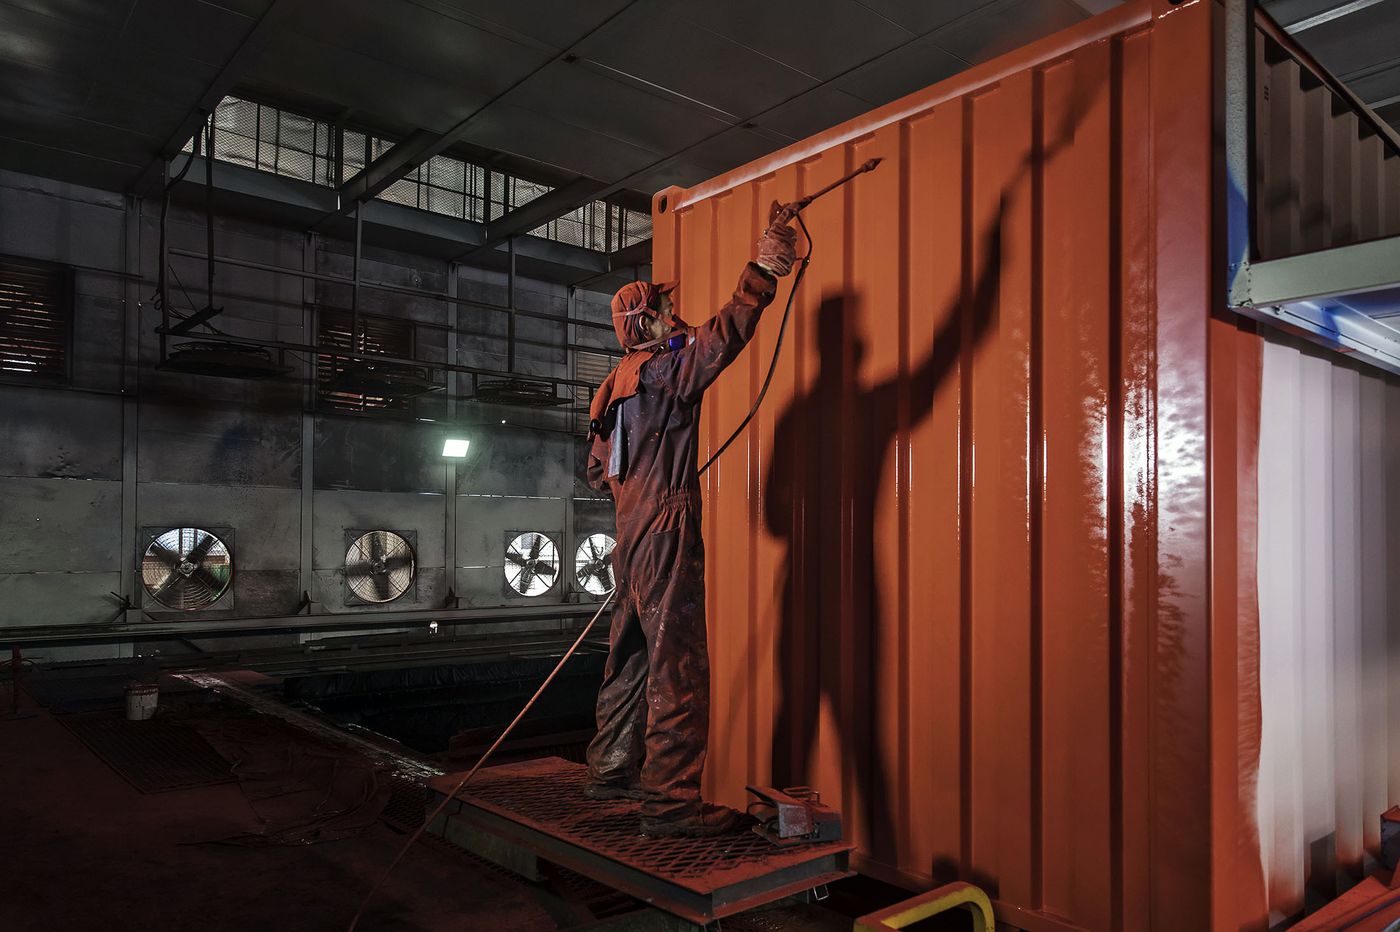 Một công nhân nhà máy Trung Quốc đang sơn thùng công ten nơ - ảnh: QILAI SHEN/BLOOMBERG